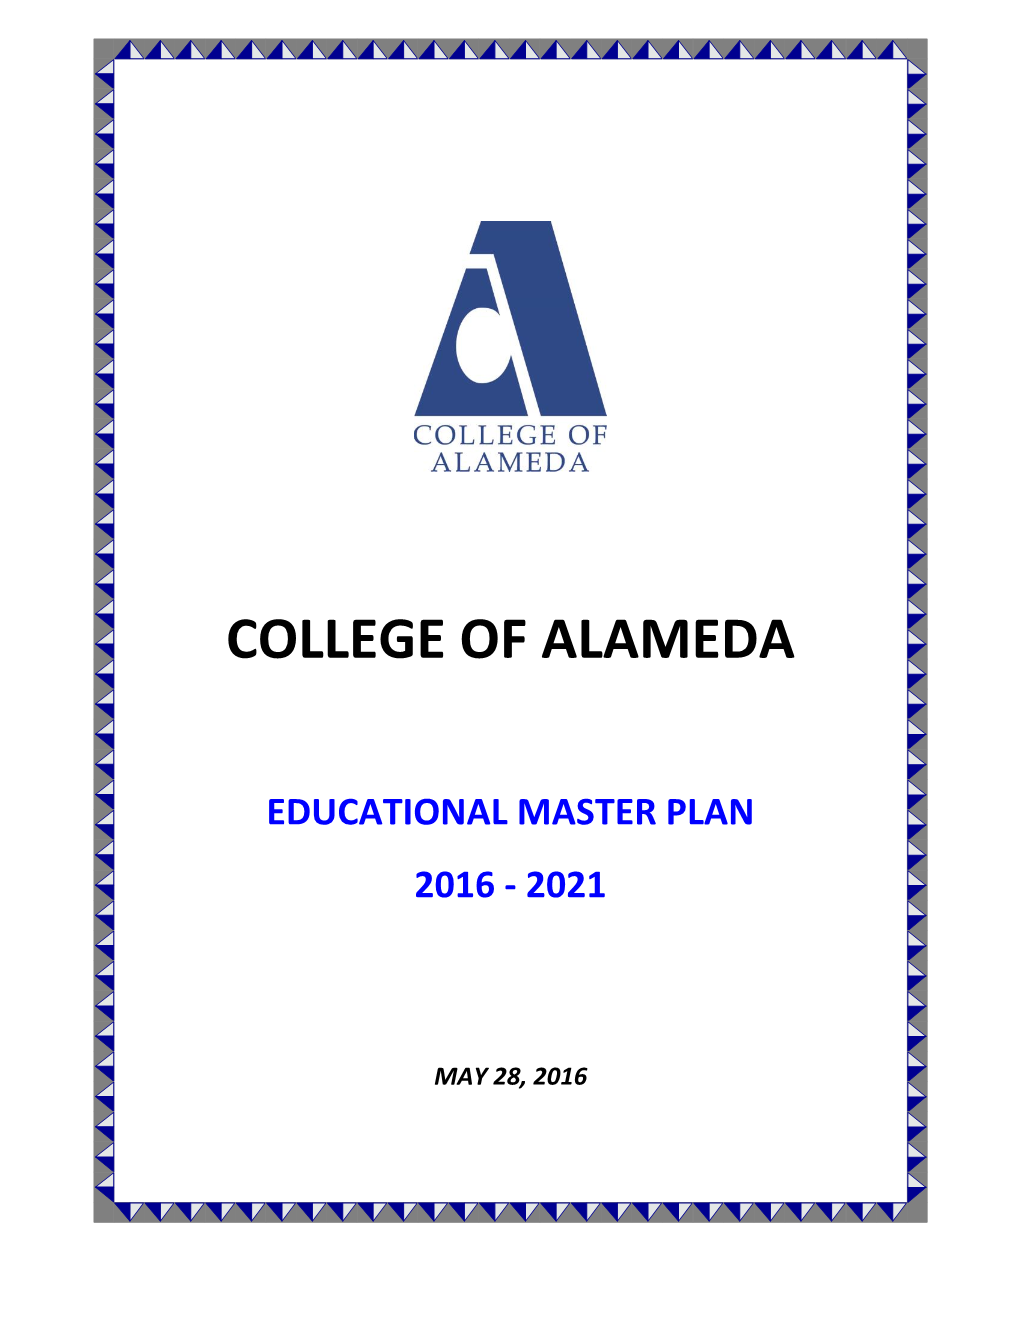 Educational Master Plan 2016 - 2021